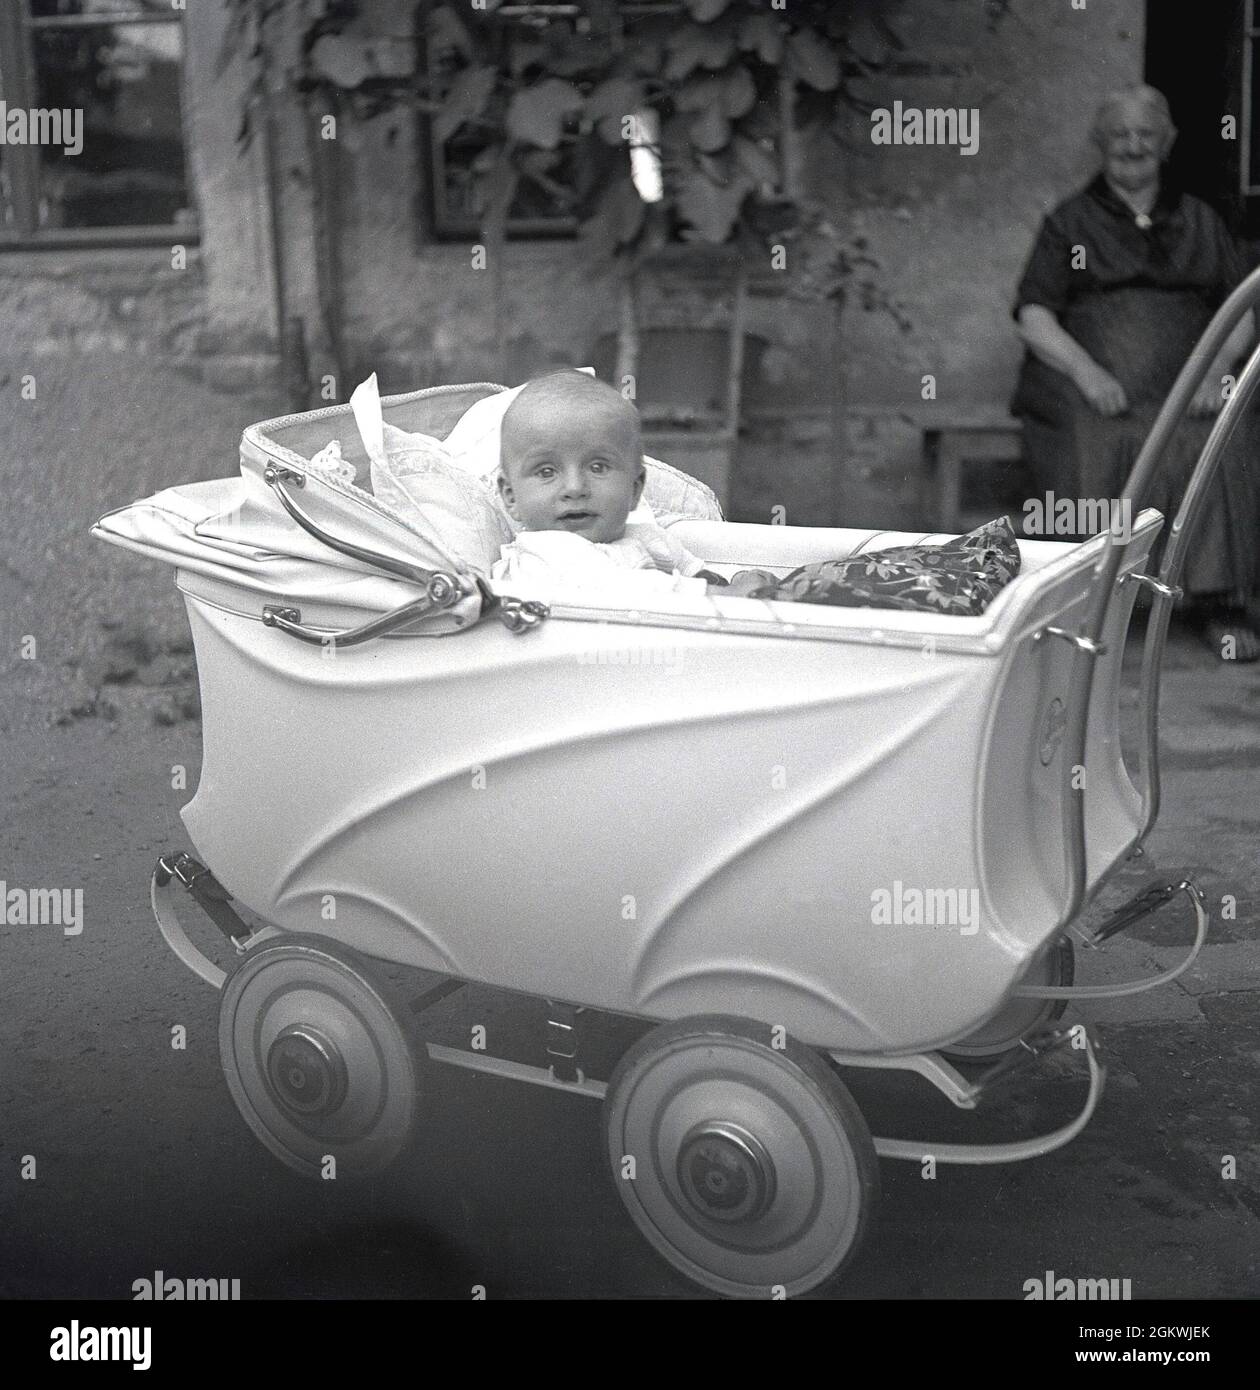 Années 1950, historique, un bébé garçon assis dans un landau ou une  poussette de l'époque, à l'extérieur dans une cour, surveillé par Grandma,  Allemagne Photo Stock - Alamy